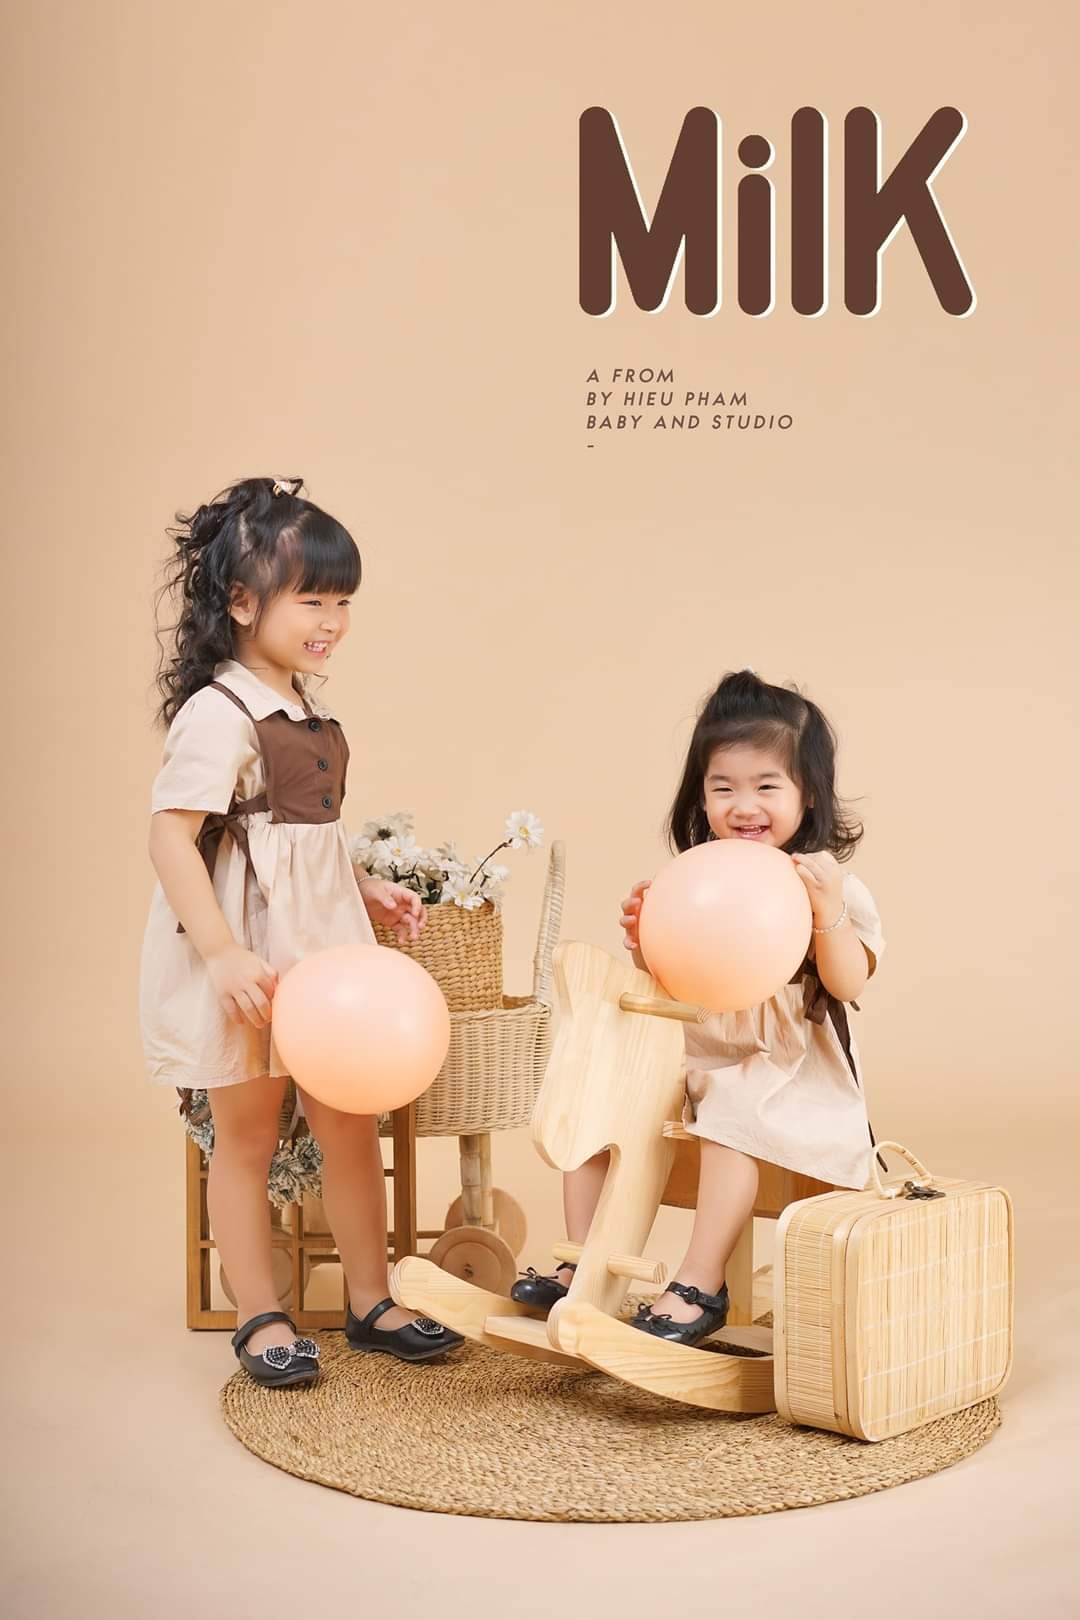 Top 9 studio chụp ảnh cho bé đẹp và chất lượng nhất Biên Hòa, Đồng Nai - HieuPham Baby And Studio